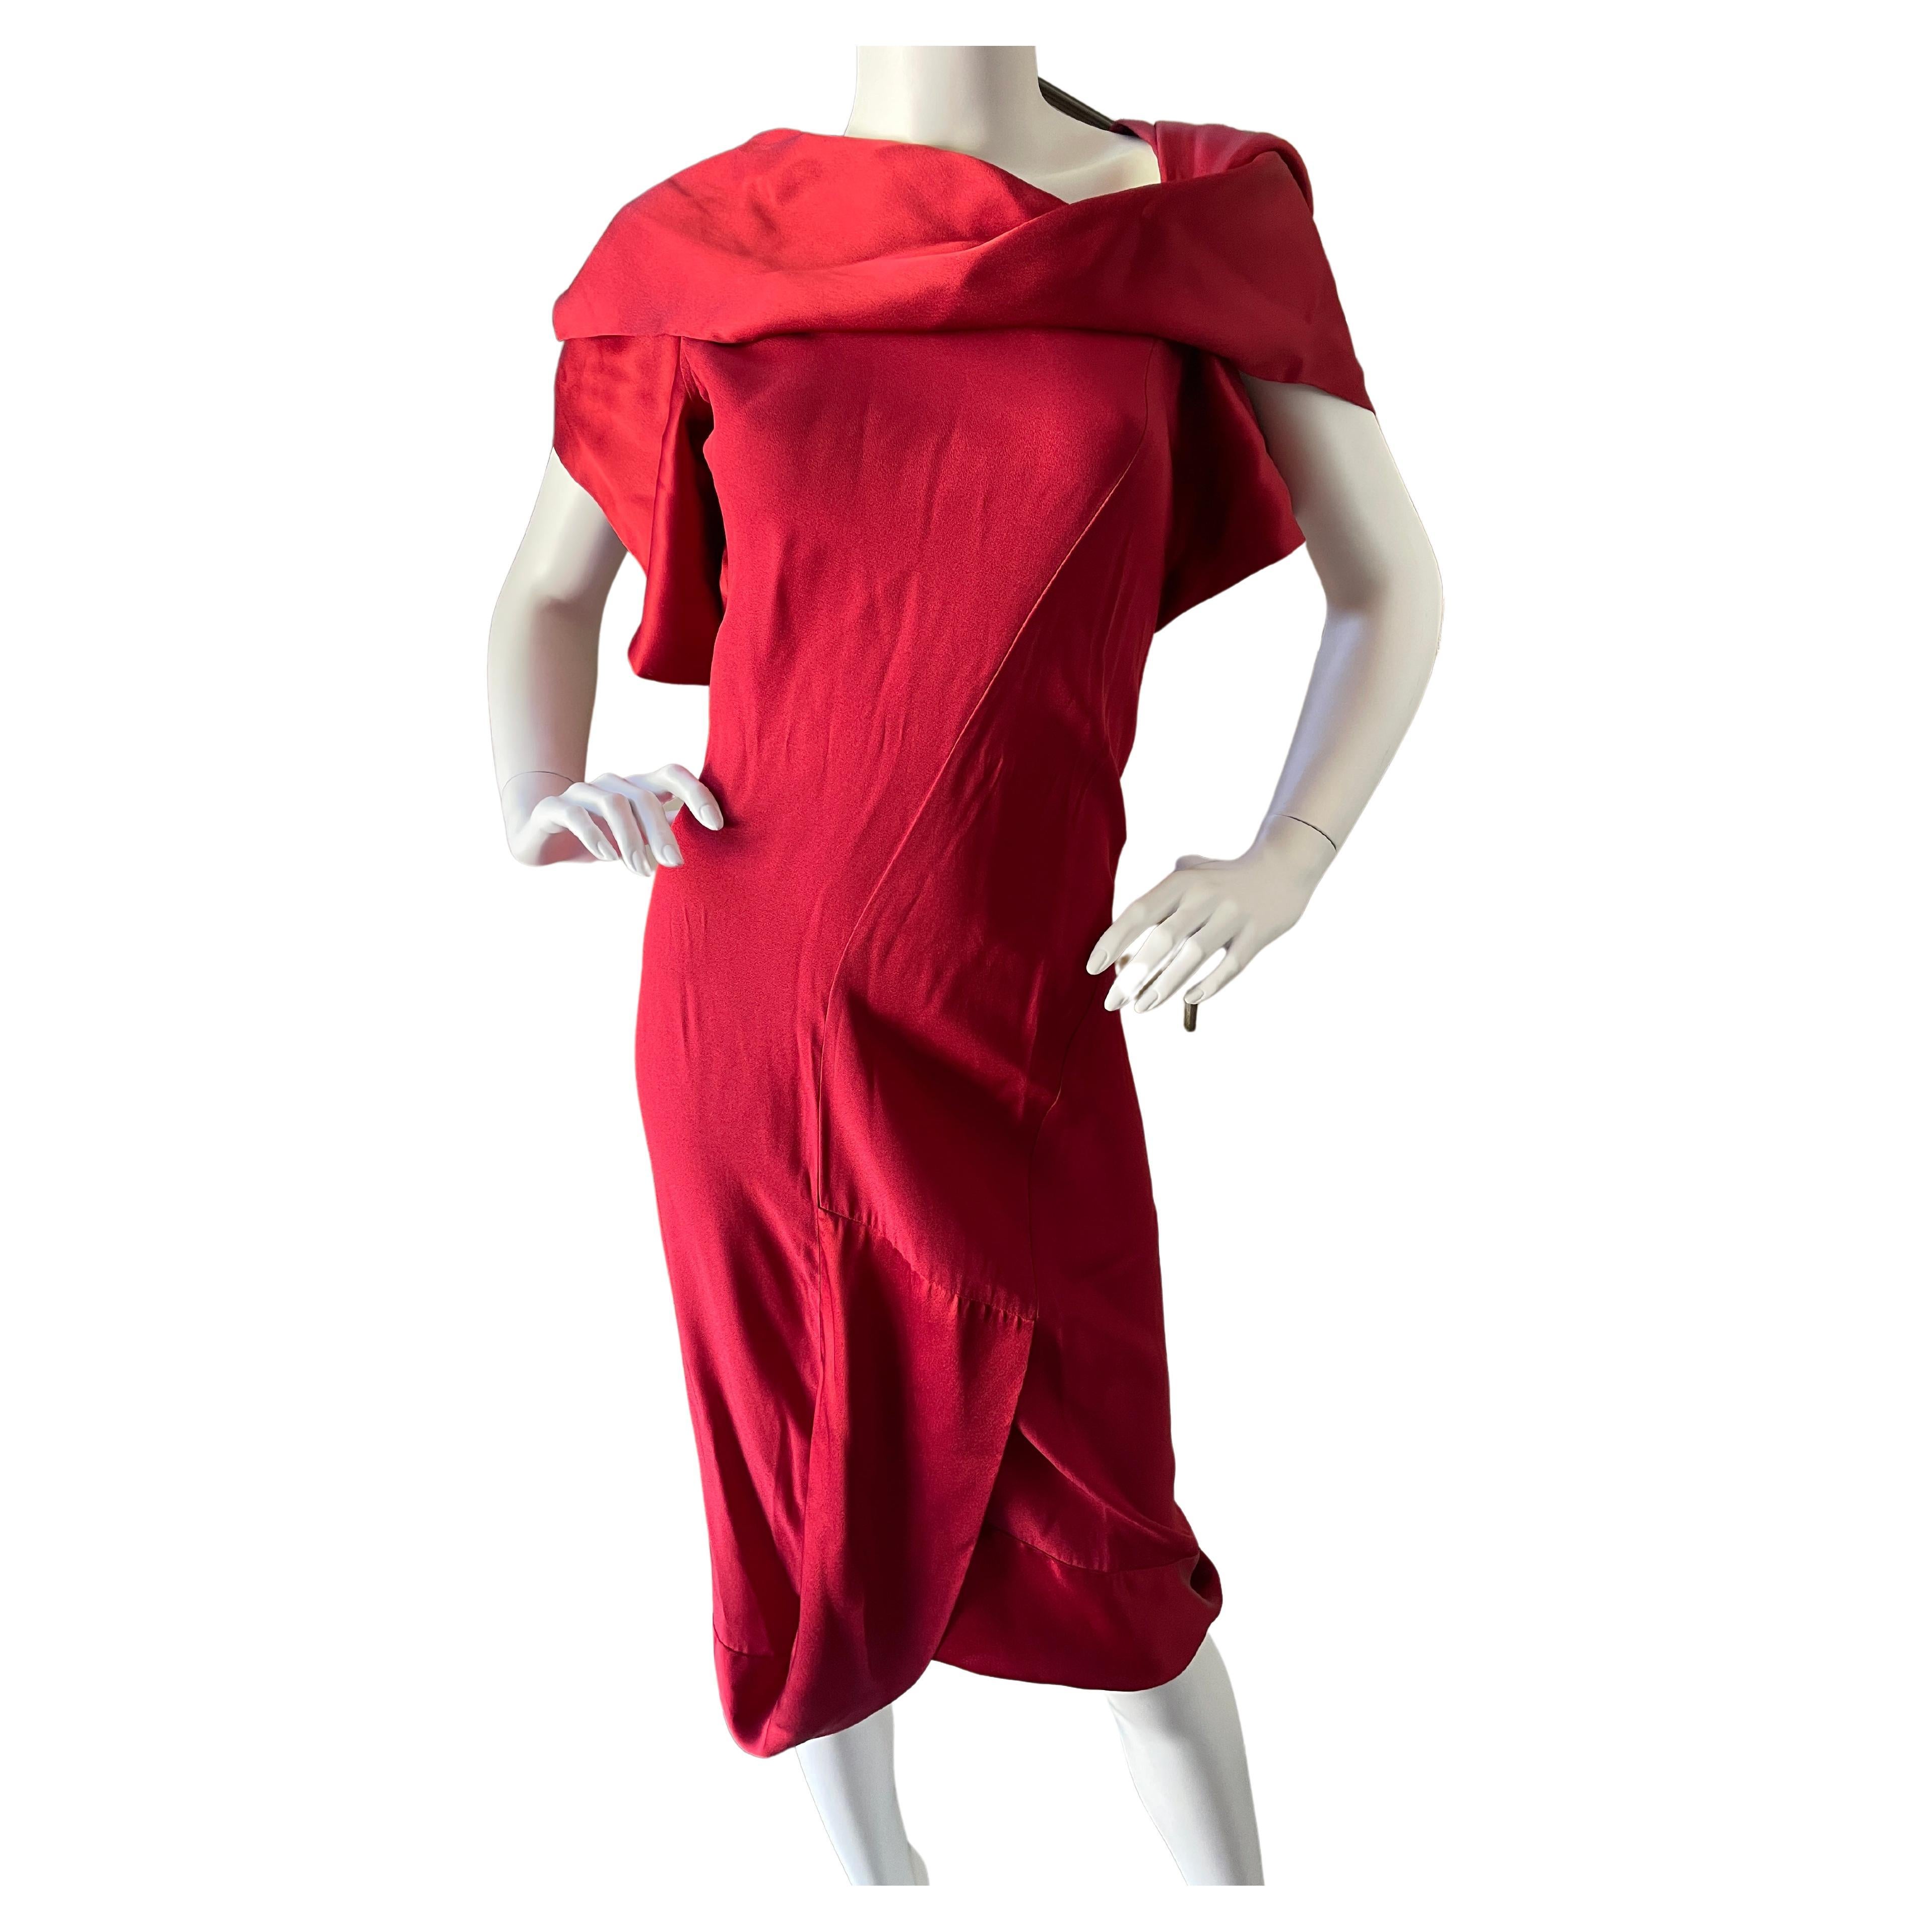 Vivienne Westwood Red Label - 17 For Sale on 1stDibs | vivienne 